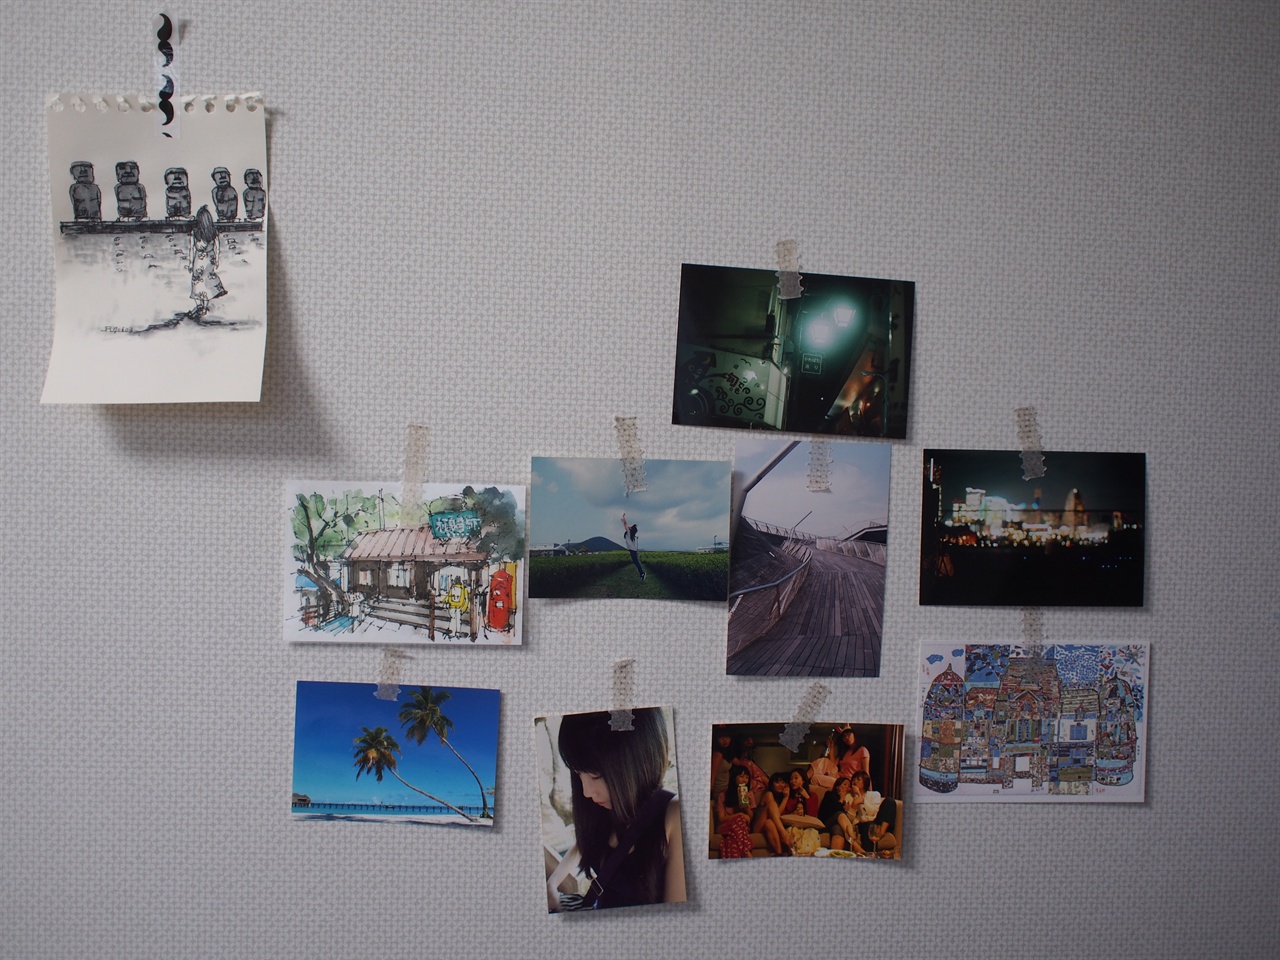 내 방의 벽에는 좋았던 여행지와 좋았던 시절, 그리고 사촌동생의 그림이 붙어있다